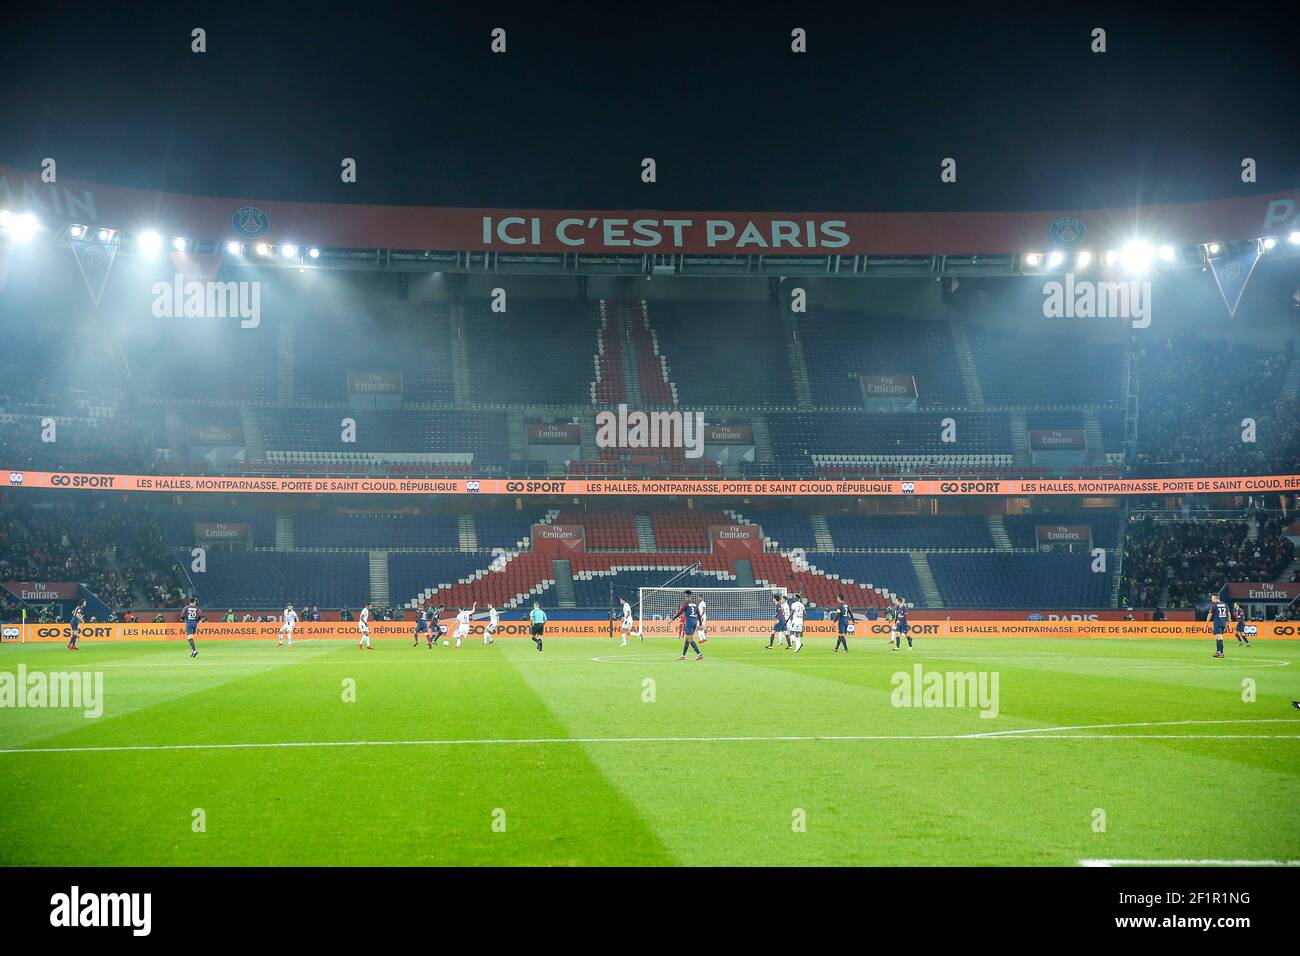 Auteil si leva in piedi senza ULTRAS tifosi durante il Campionato Francese Ligue 1 partita di calcio tra Parigi Saint-Germain e ESTAC Troyes il 29 novembre 2017 allo stadio Parc des Princes di Parigi, Francia - Foto Stephane Allaman / DPPI Foto Stock